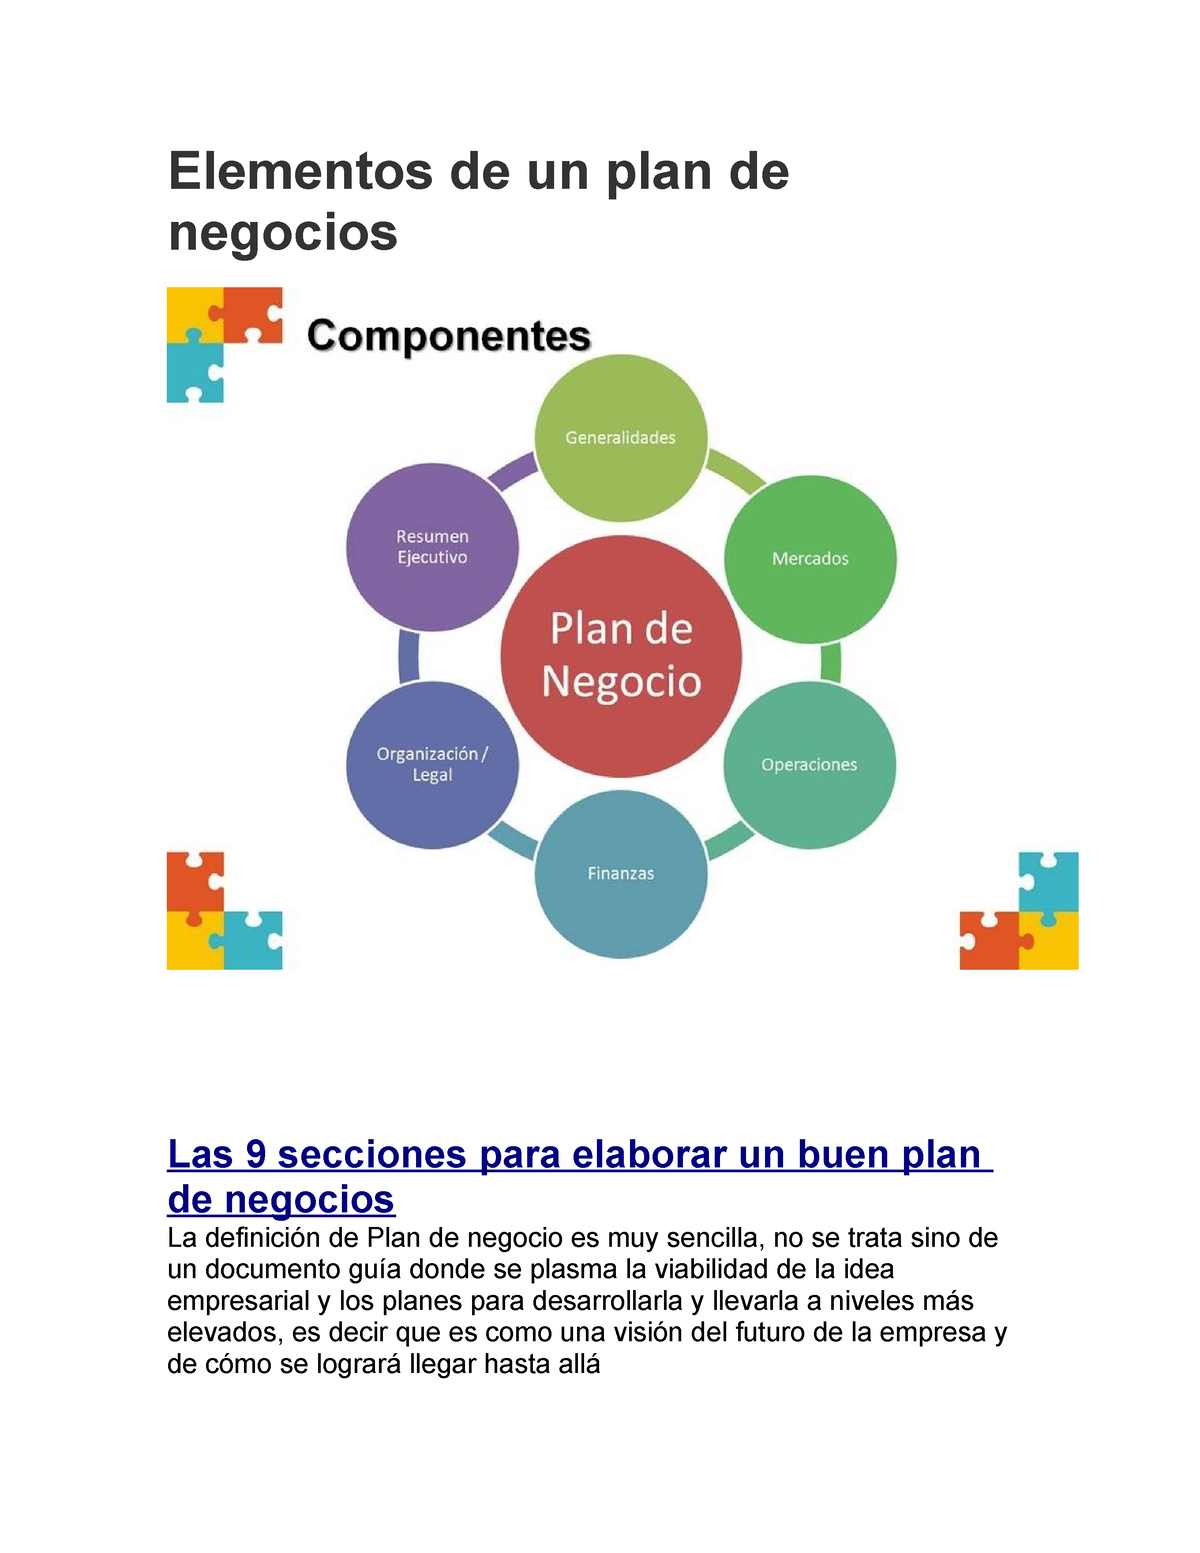 Elementos De Un Plan De Negocios V Elementos De Un Plan De Negocios Las 9 Secciones Para 6307